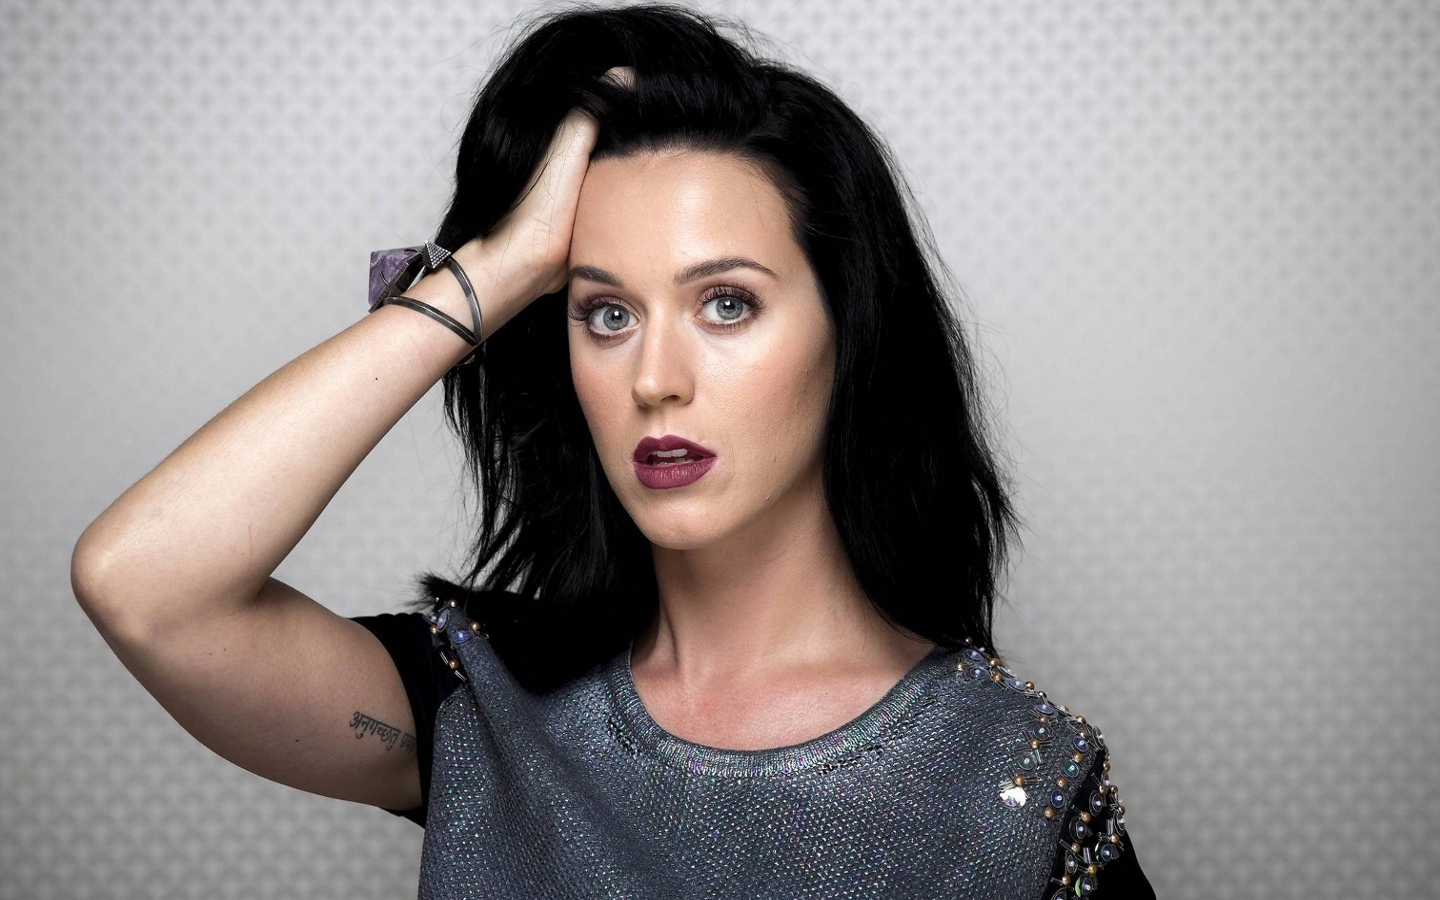 La millonaria suma que deberá pagar Katy Perry por plagio